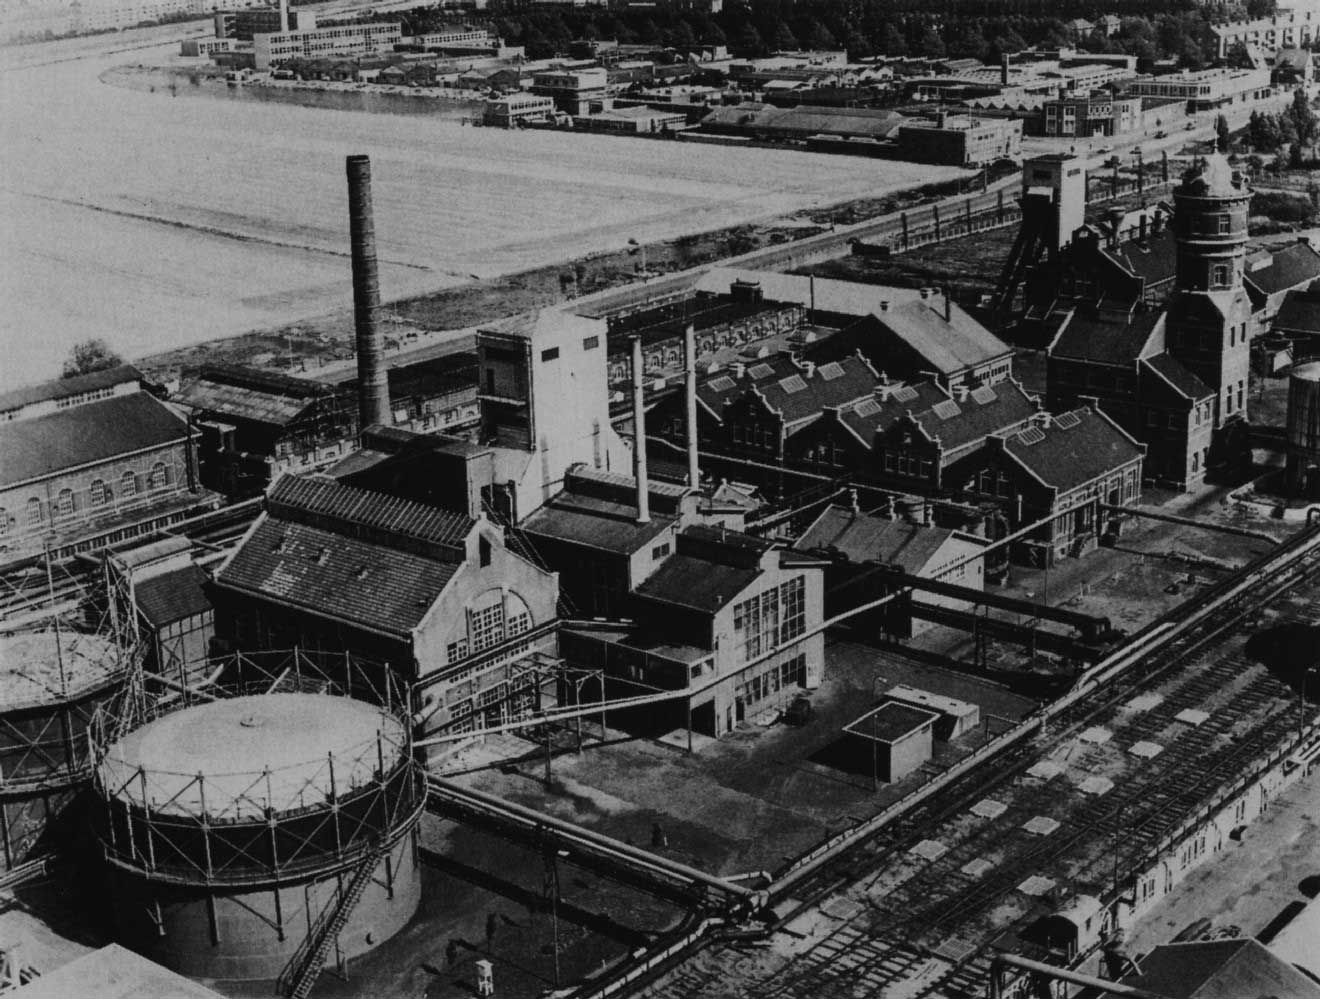 Tweede Gemeentegasfabriek, Trekvlietplein 1, 1955